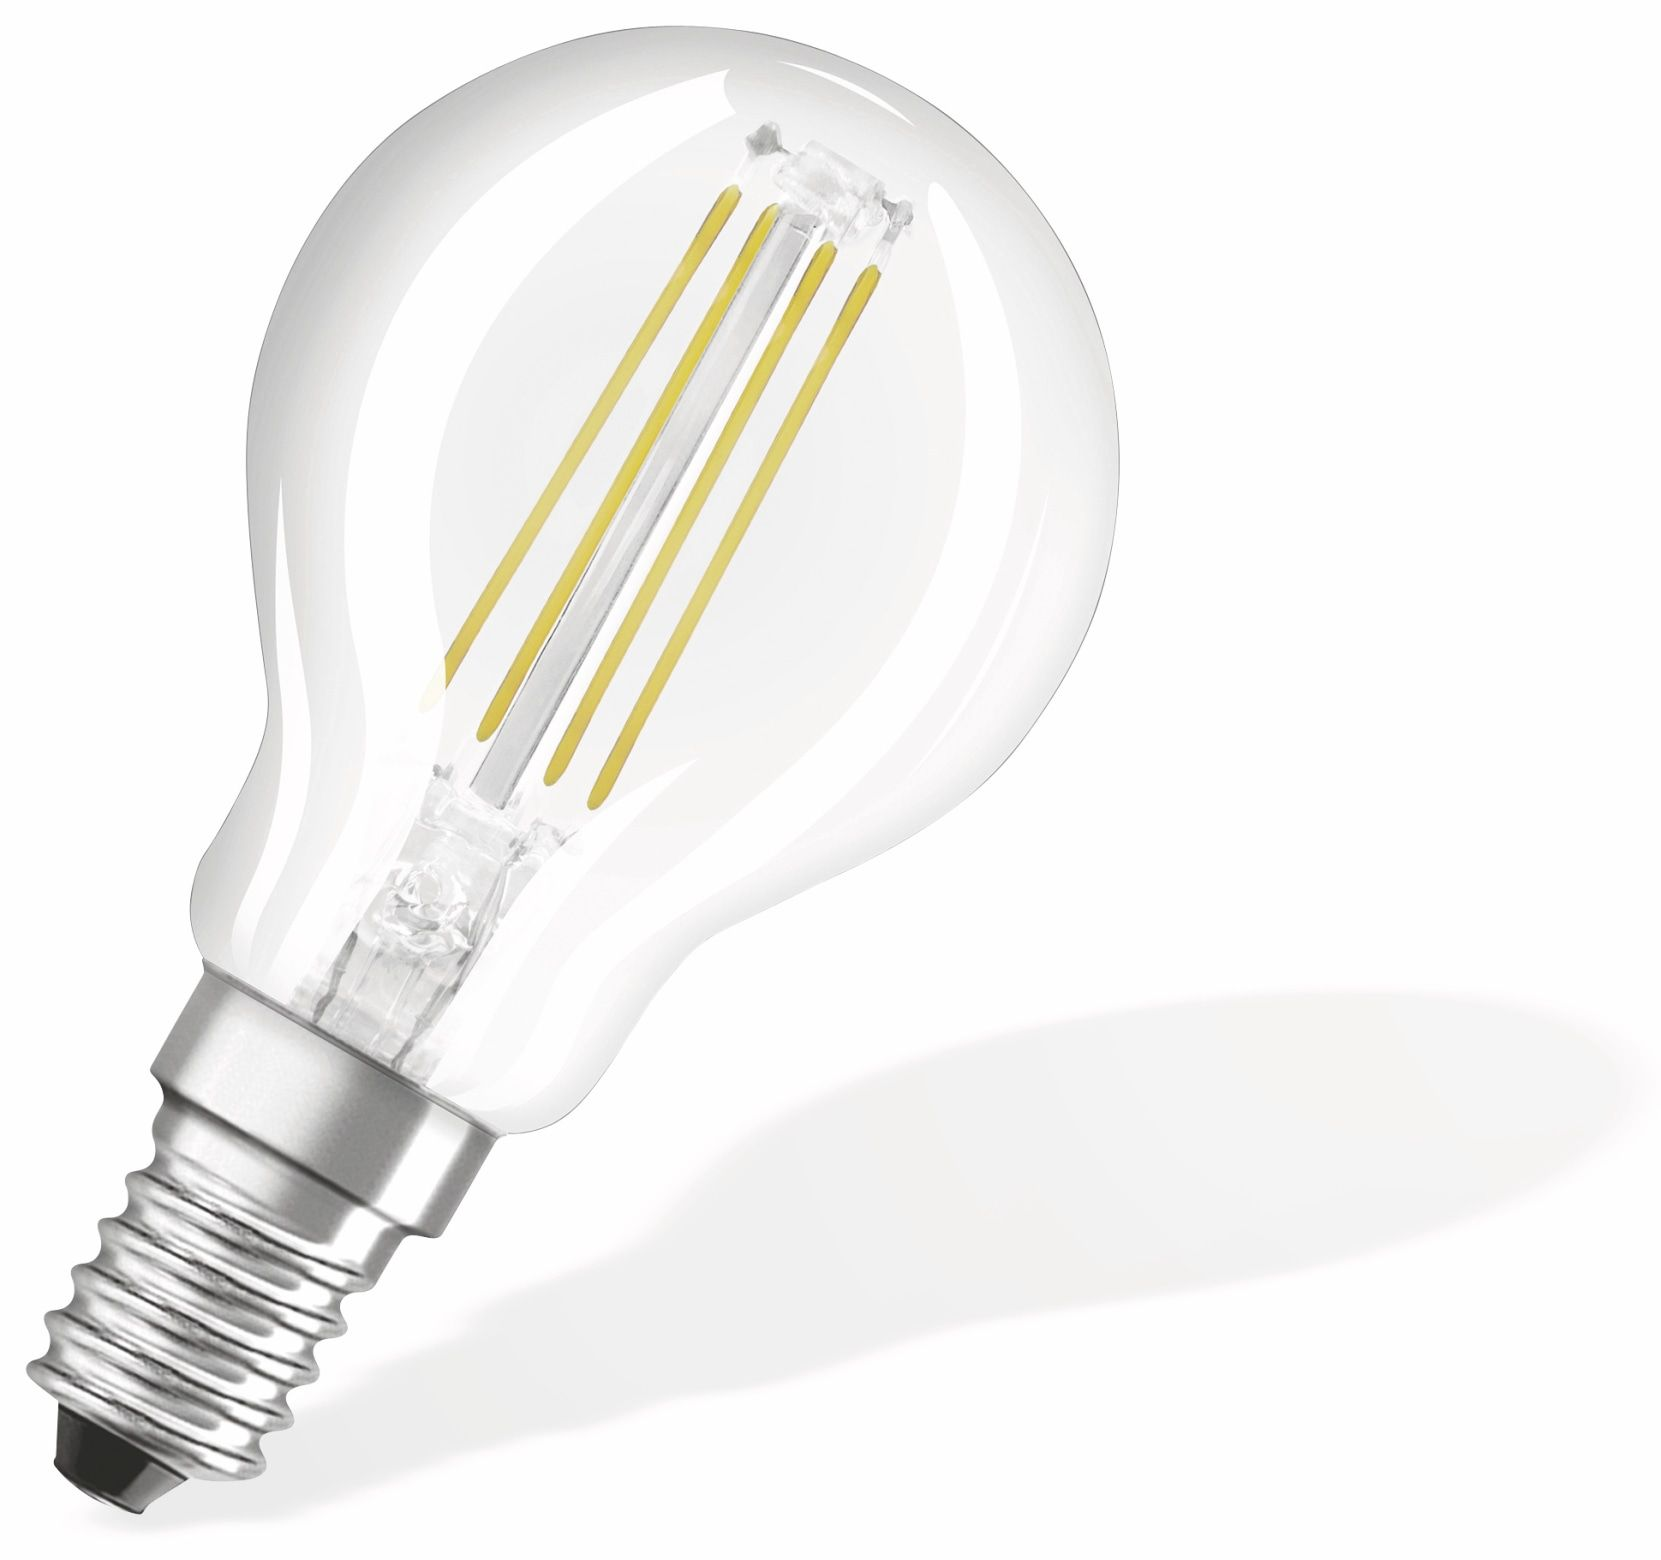 P LED OSRAM  BASE LED 470 CLASSIC Lampe Lumen Warmweiß